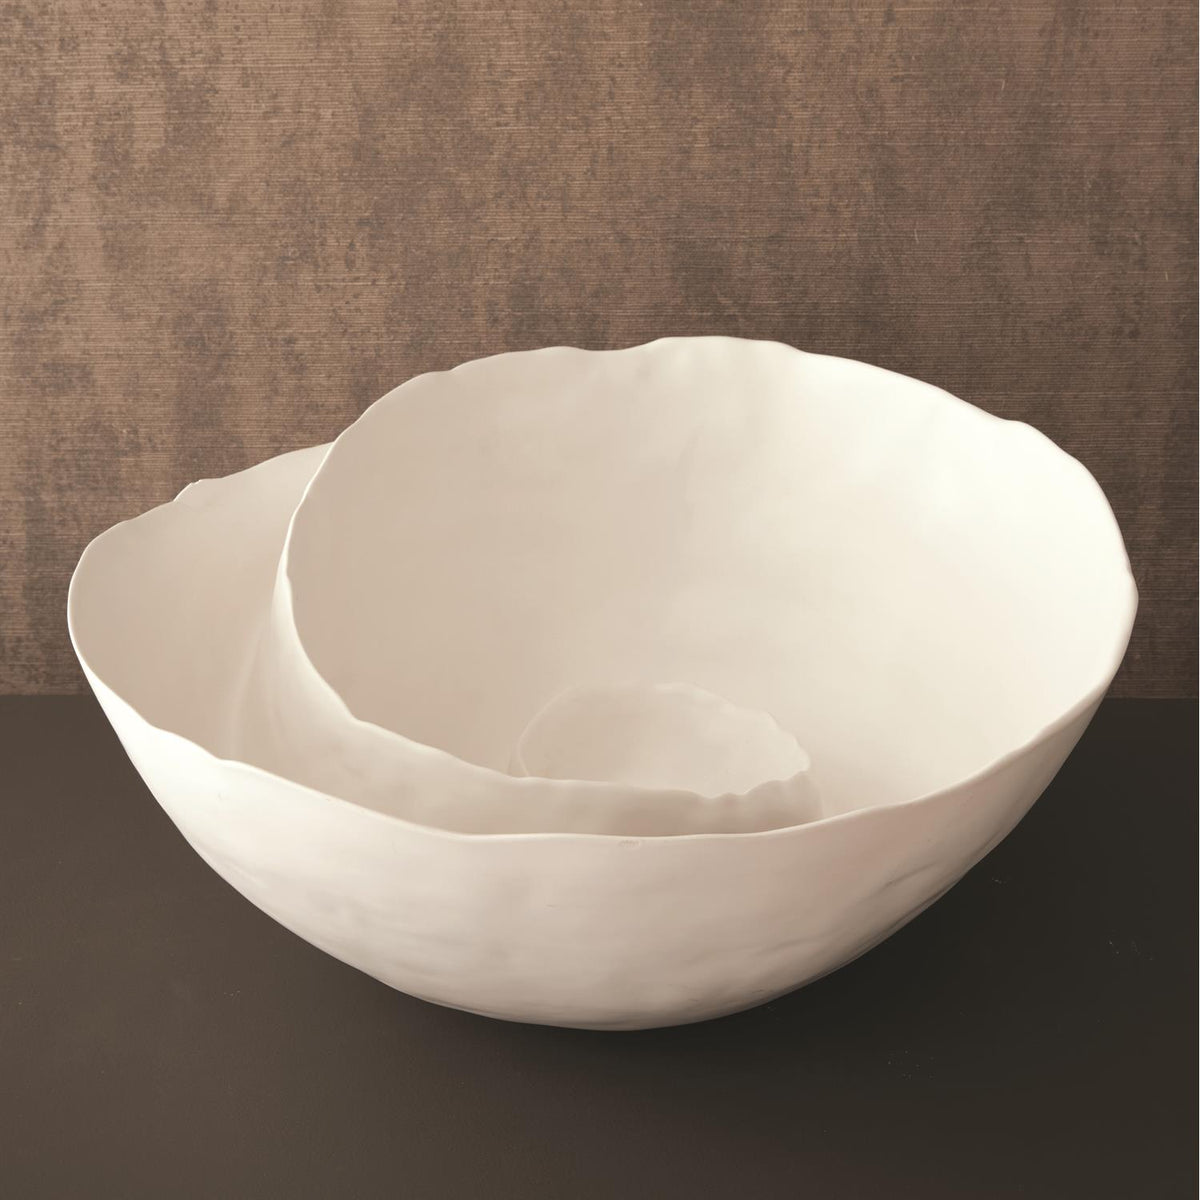 Spiral Bowl-Matte White-Global Views-Bowls-Artistic Elements